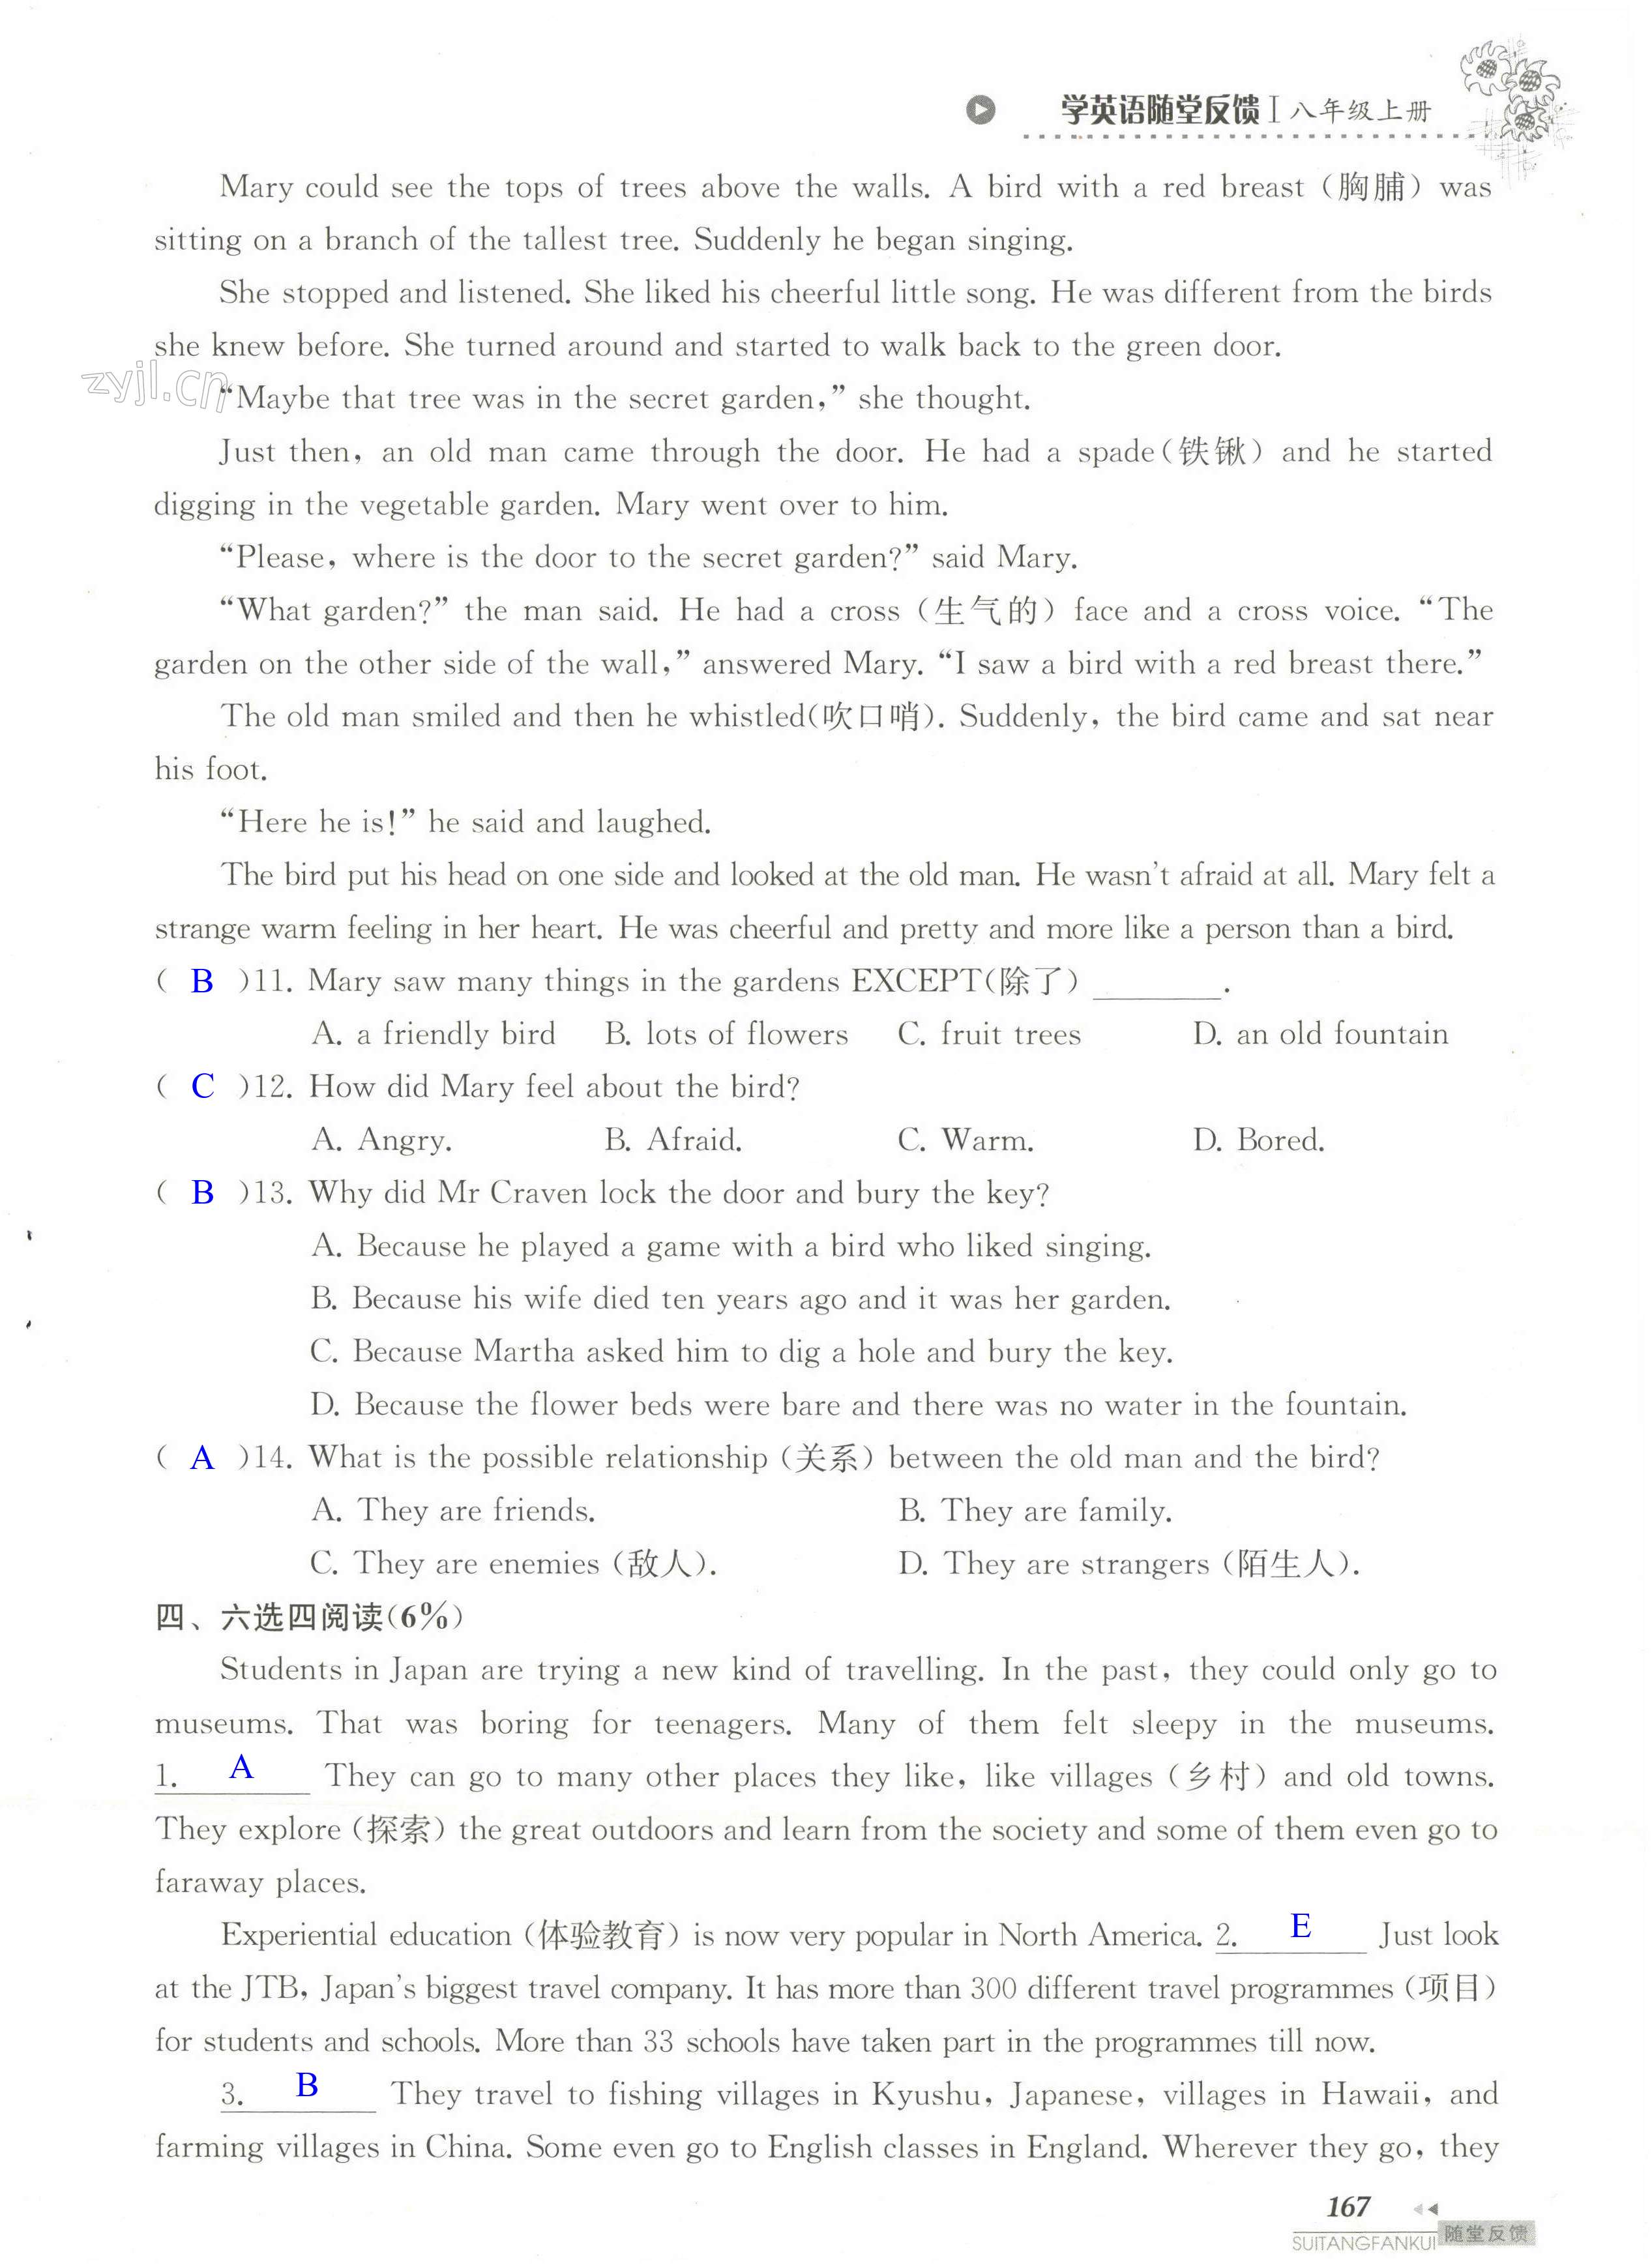 单元综合测试卷 Test for Unit 3 of 8A - 第167页